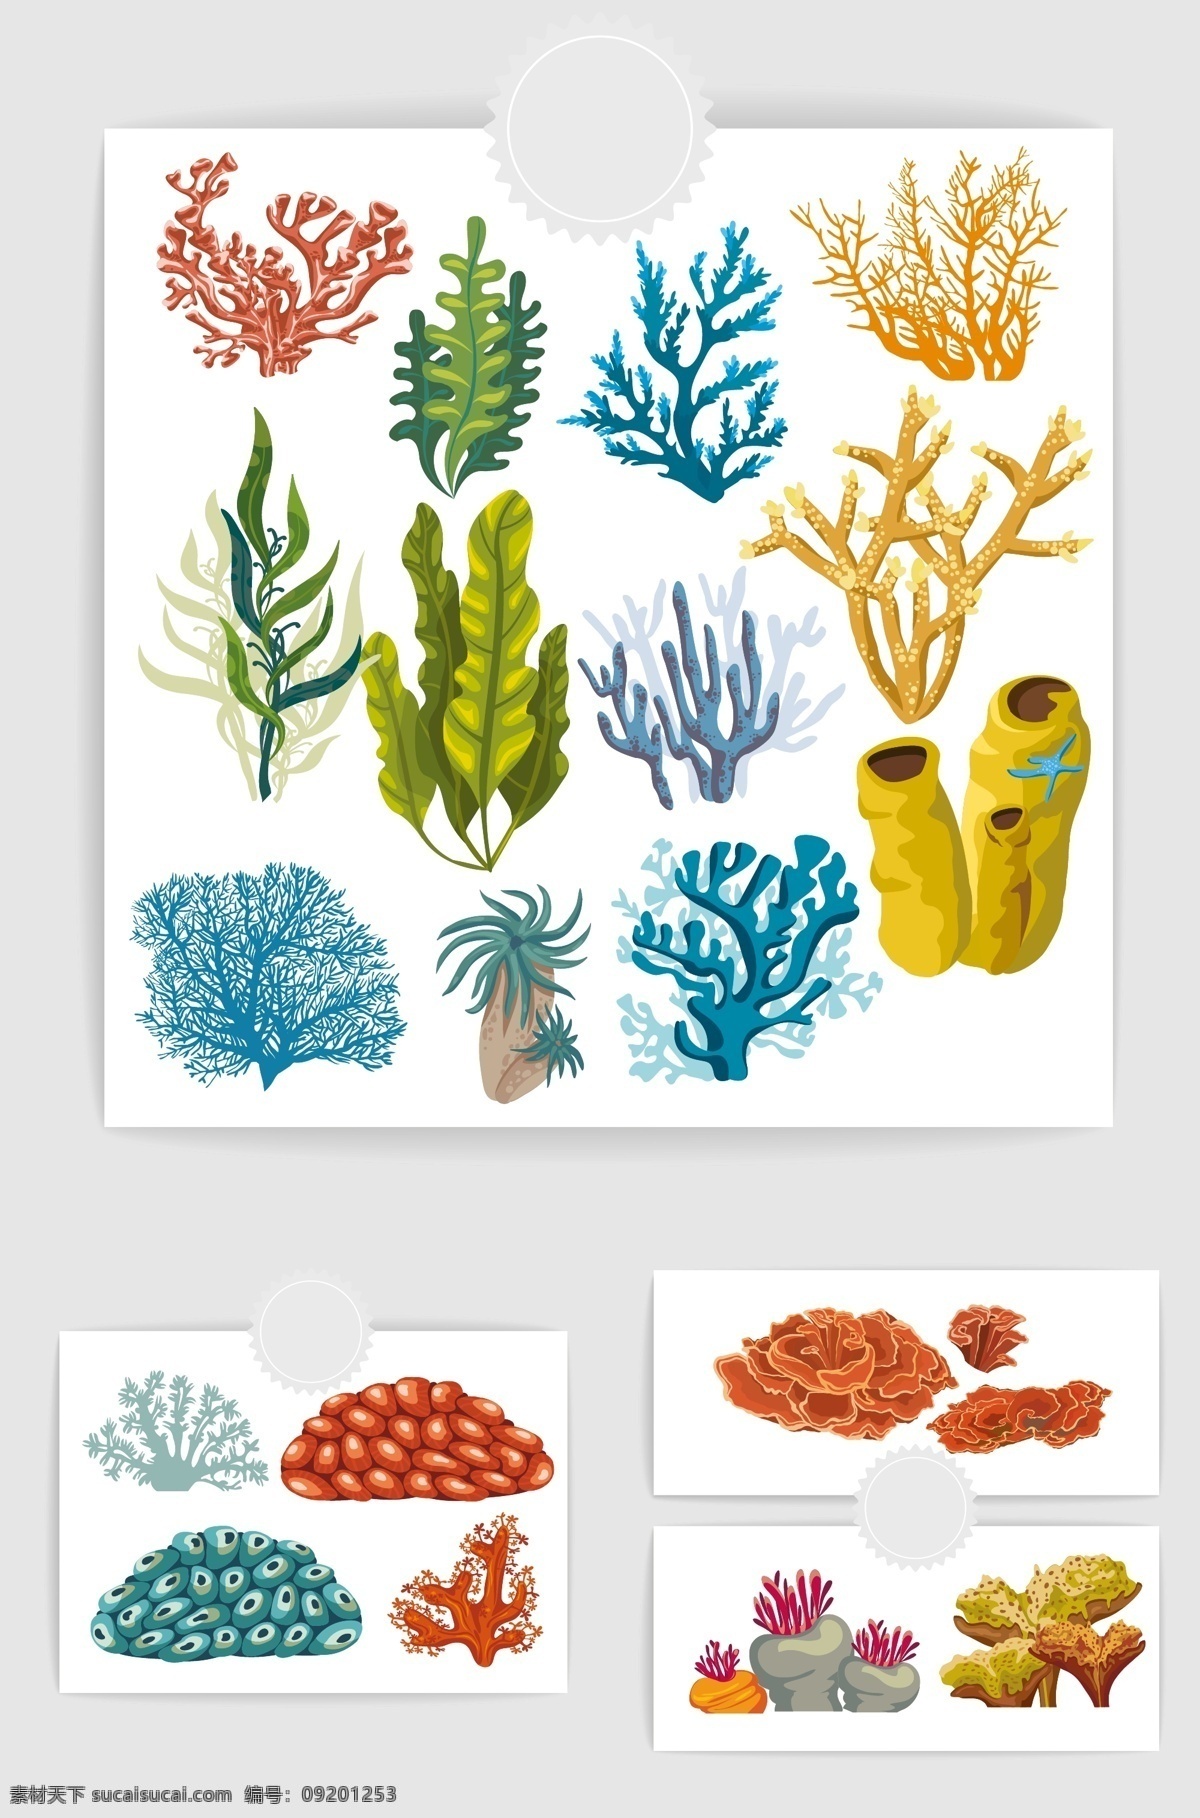 海洋植物 海草 珊瑚草 珊瑚 海底植物 大海深处 矢量 生物世界 海洋生物